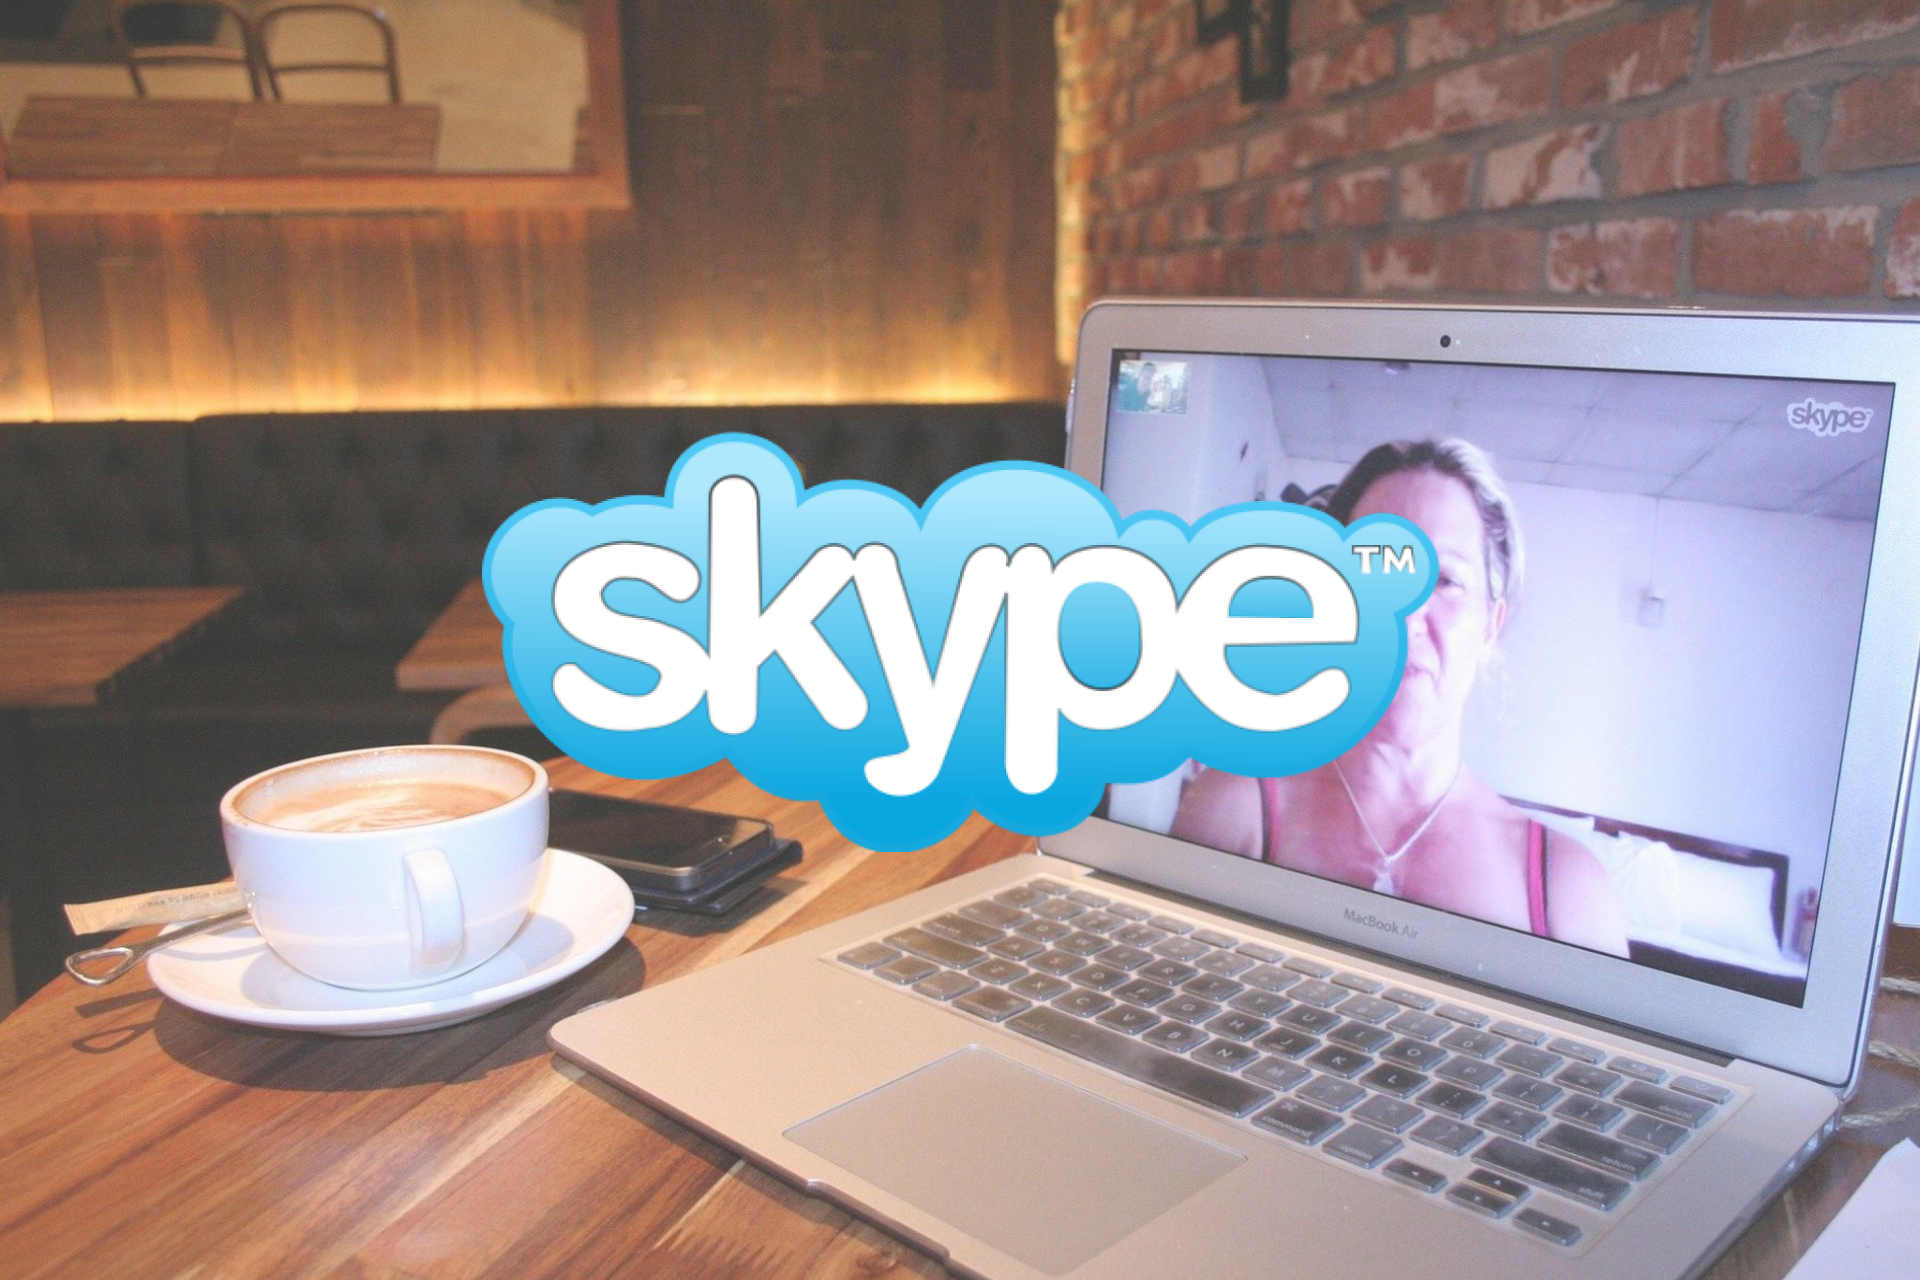 quit skype